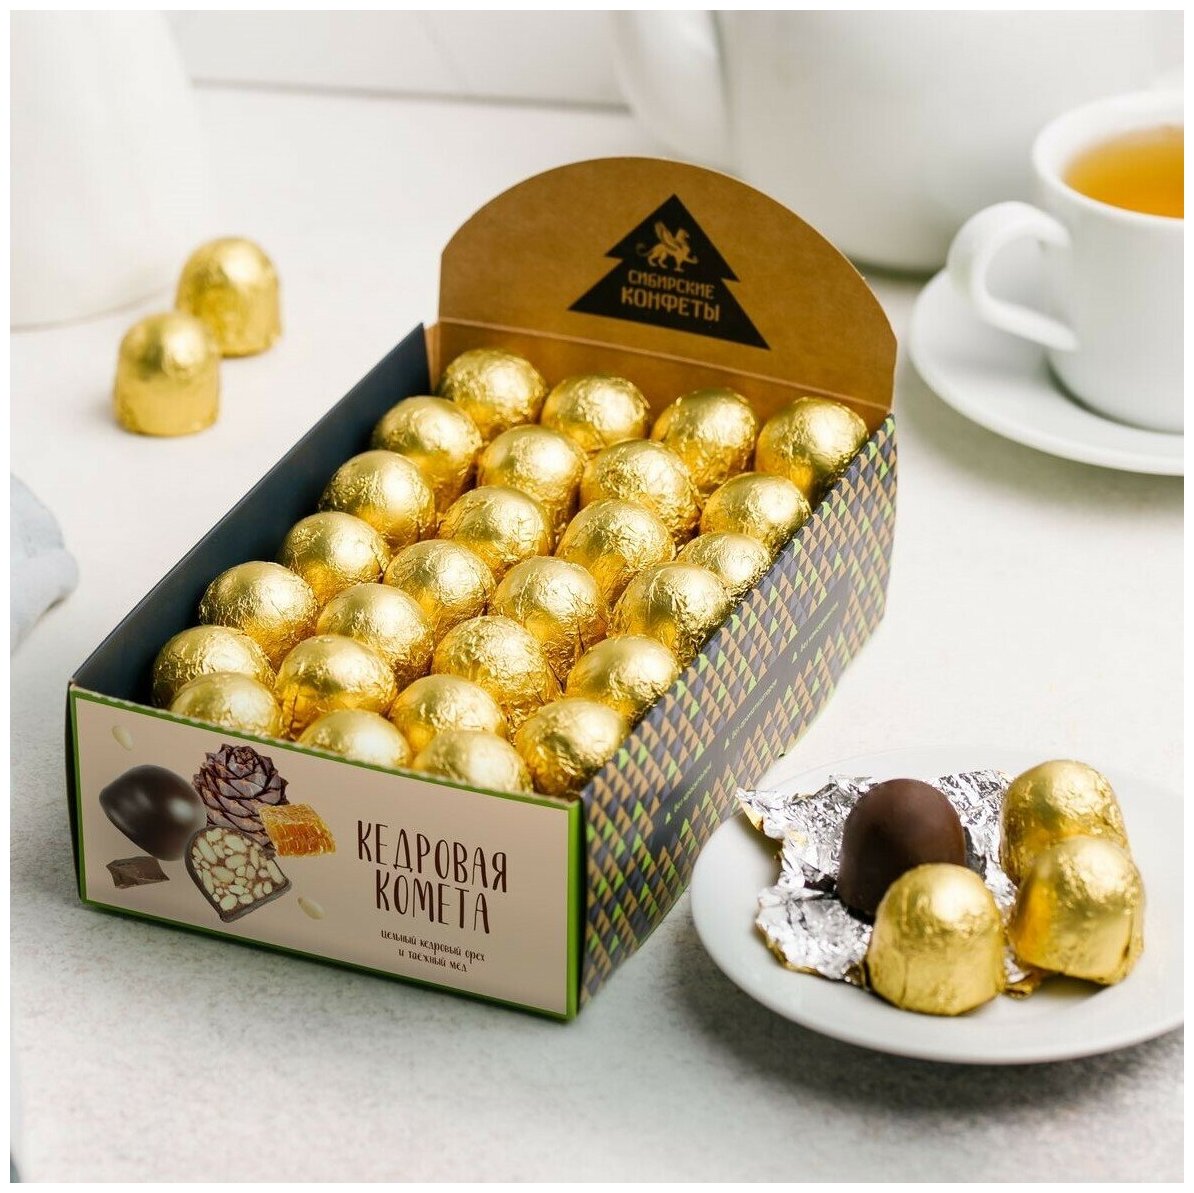 Кедровая комета Сибирские конфеты 540 г / мягкий грильяж / подарочные шоколадные конфеты в коробке — купить в интернет-магазине по низкой цене на Яндекс Маркете